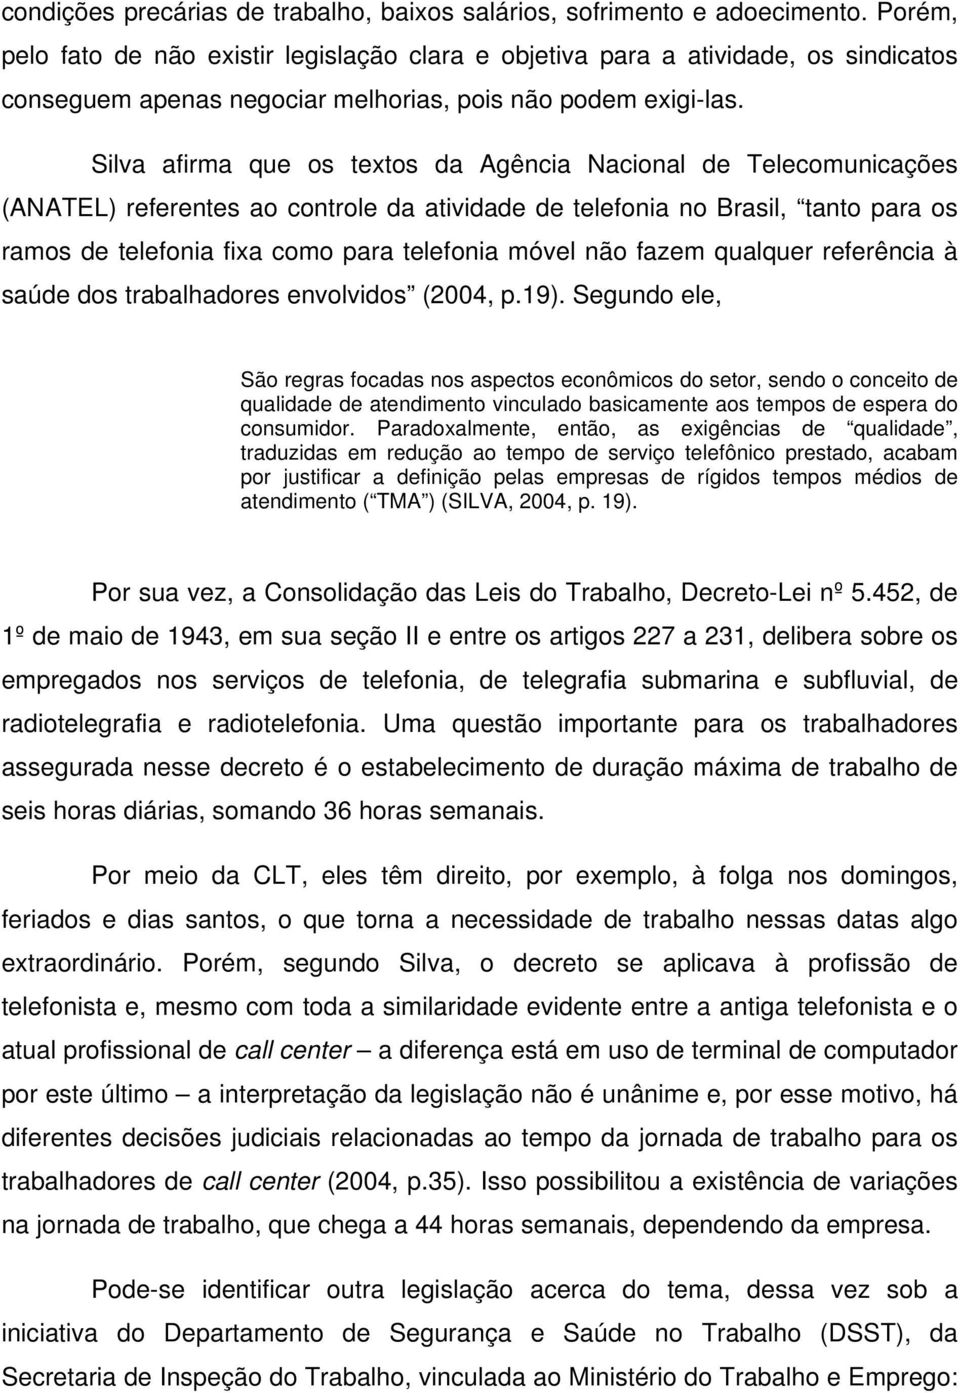 Silva afirma que os textos da Agência Nacional de Telecomunicações (ANATEL) referentes ao controle da atividade de telefonia no Brasil, tanto para os ramos de telefonia fixa como para telefonia móvel